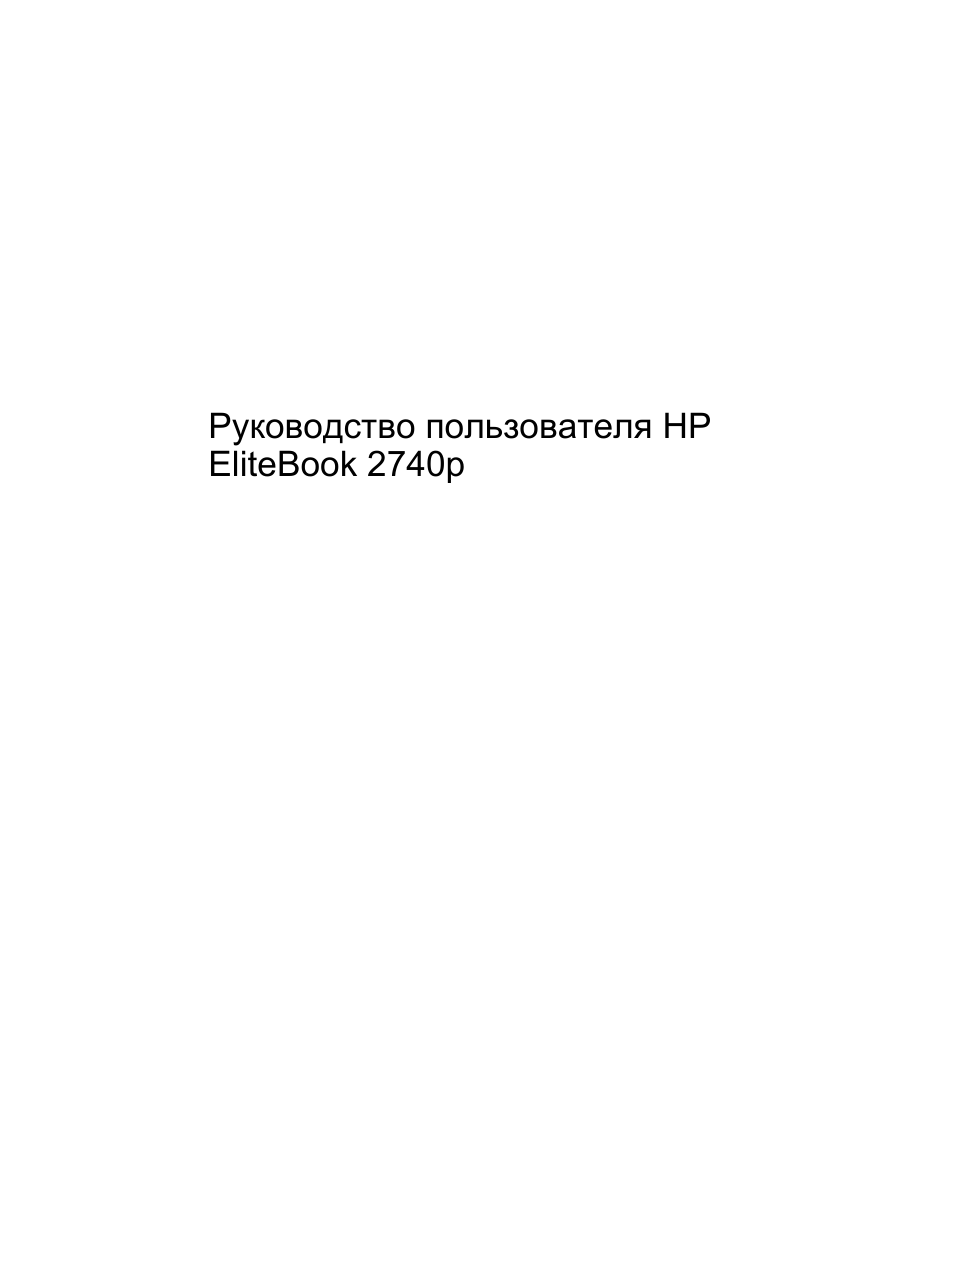 Инструкция по эксплуатации HP Планшетный ПК HP EliteBook 2740p | 198 страниц